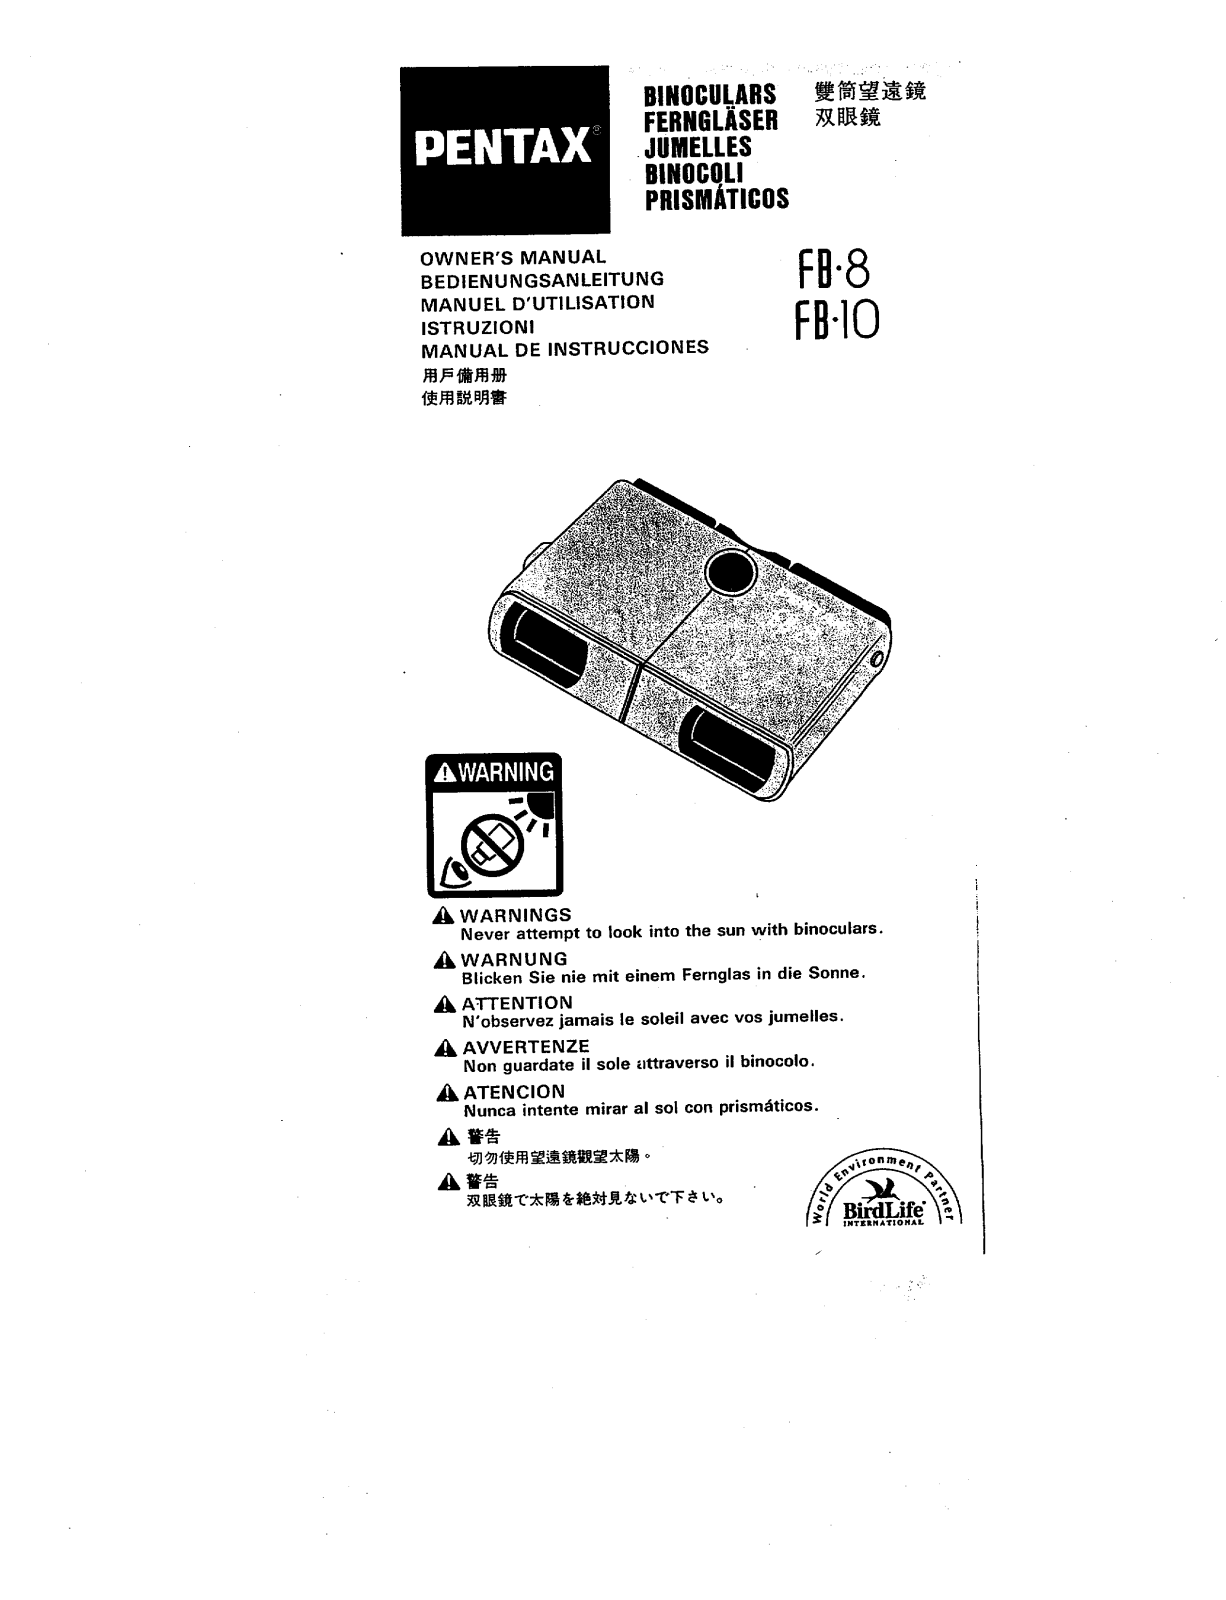 Pentax FB10, FB 8 Owners manual